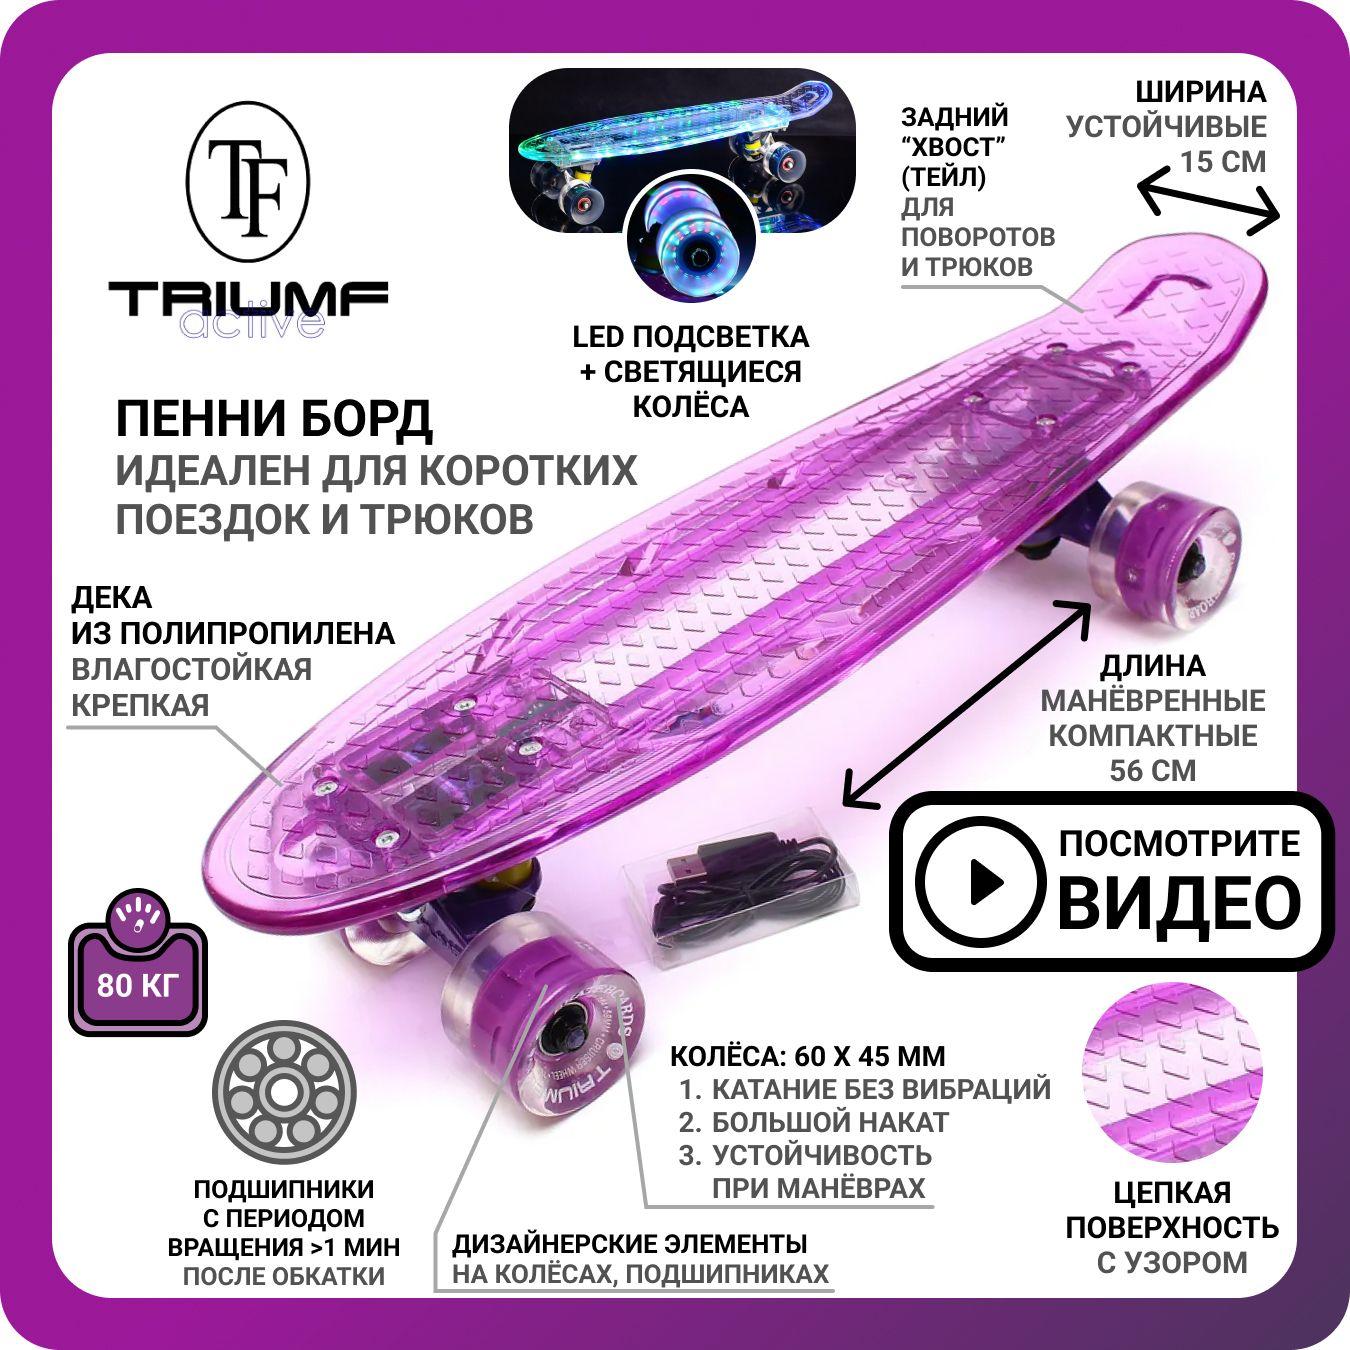 Пенни борд Triumf Active TLS-403 фиолетовый 22 дюйма взрослый и детский со светящимися колёсами, мини пенниборд для детей, скейтборд для девочек и мальчиков, скейт борт для начинающих подростков